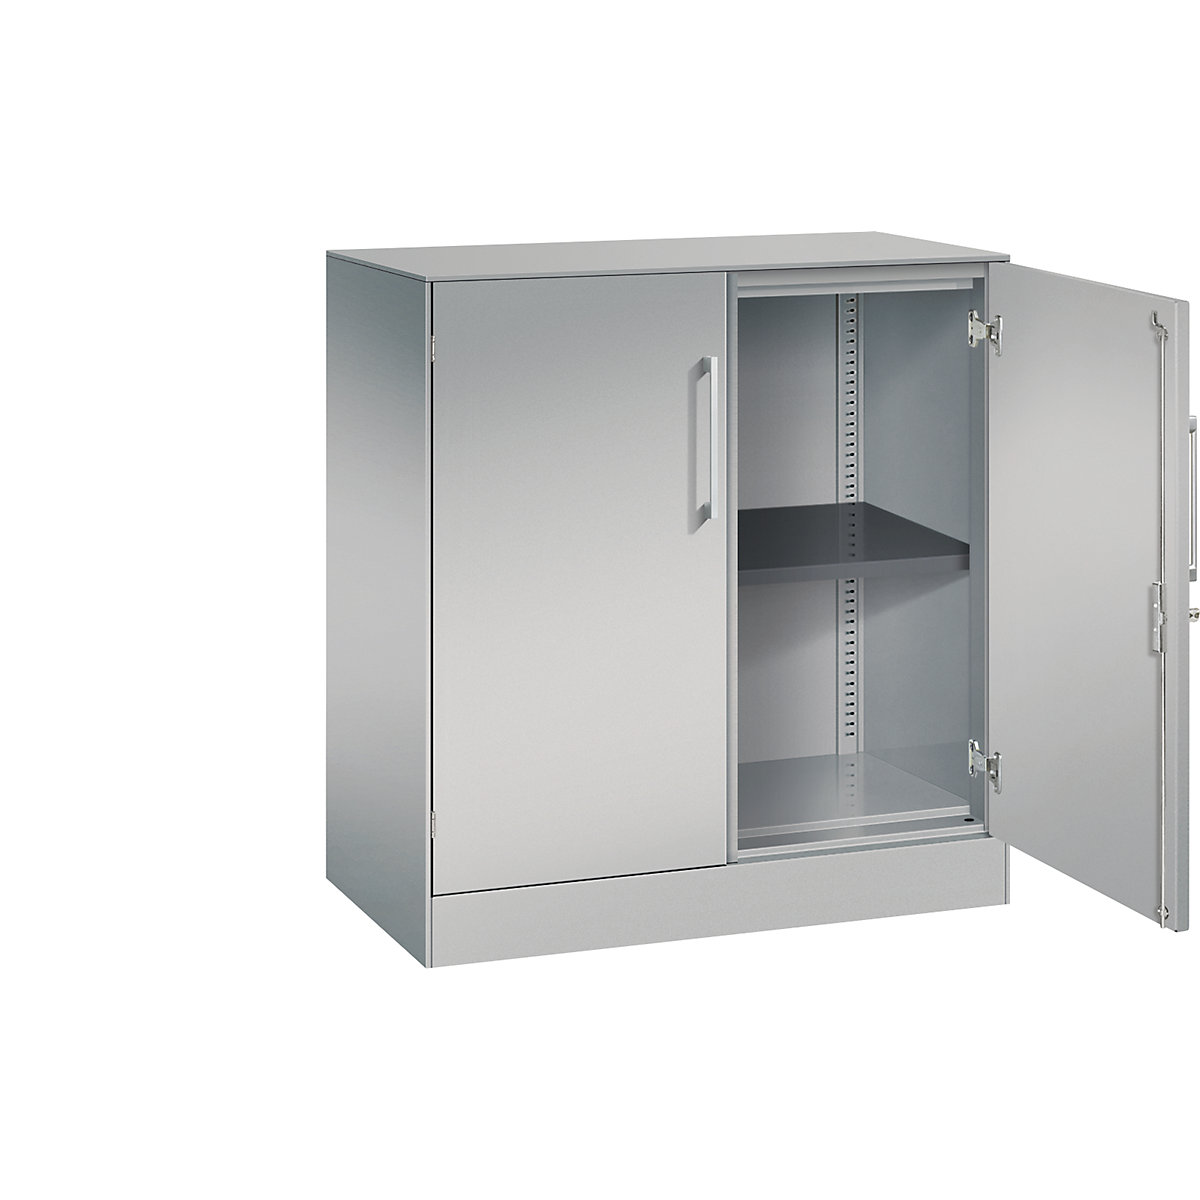 Dulap cu uși cu canaturi ASISTO, înălțime 897 mm – C+P, lățime 800 mm, 1 poliță, alb aluminiu/alb aluminiu-12